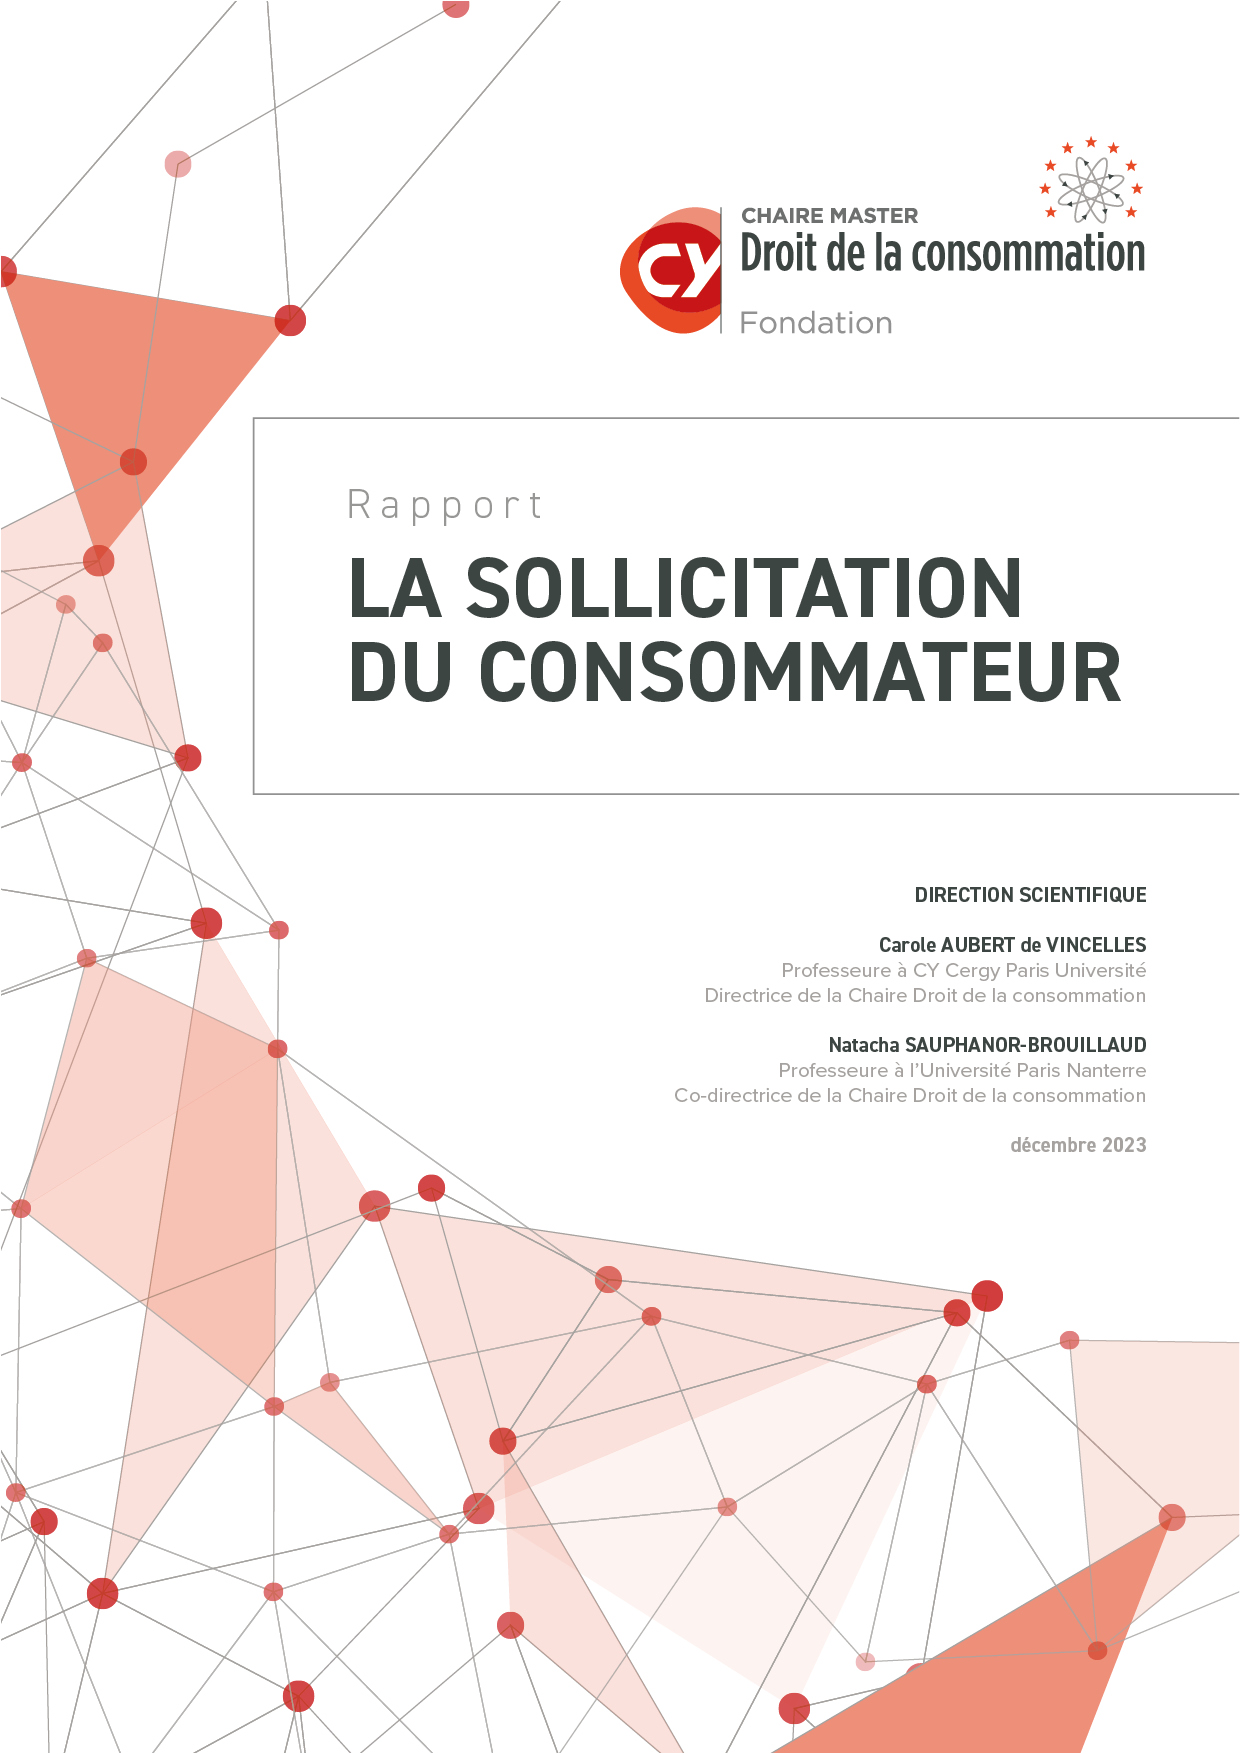 CY - Chaire Dt Conso - 2023 Rapport - Sollicitation du consommateur COUV